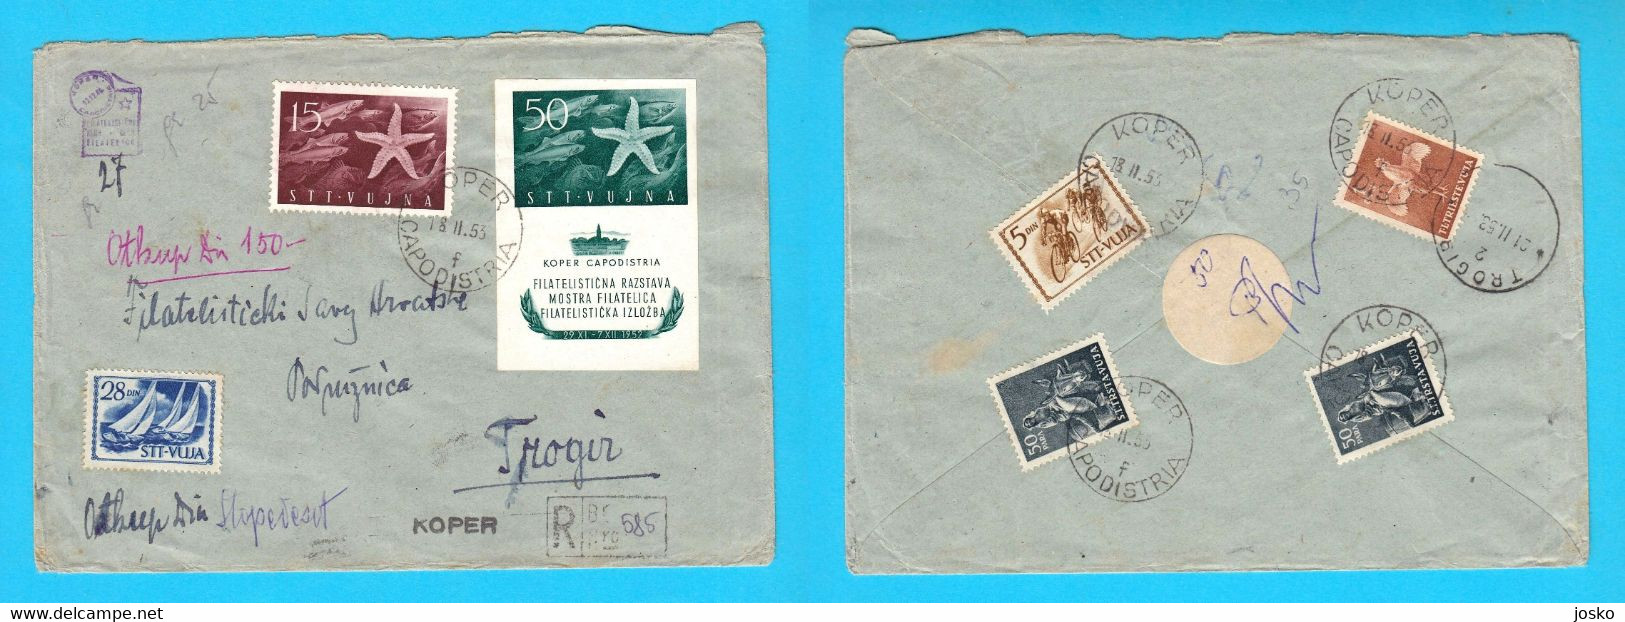 TRIESTE ZONA B STT VUJNA VUJA Registered Letter Travelled 1953 Koper Capodistria Yugoslavia Slovenia Istria Italy Italia - Marcophilie